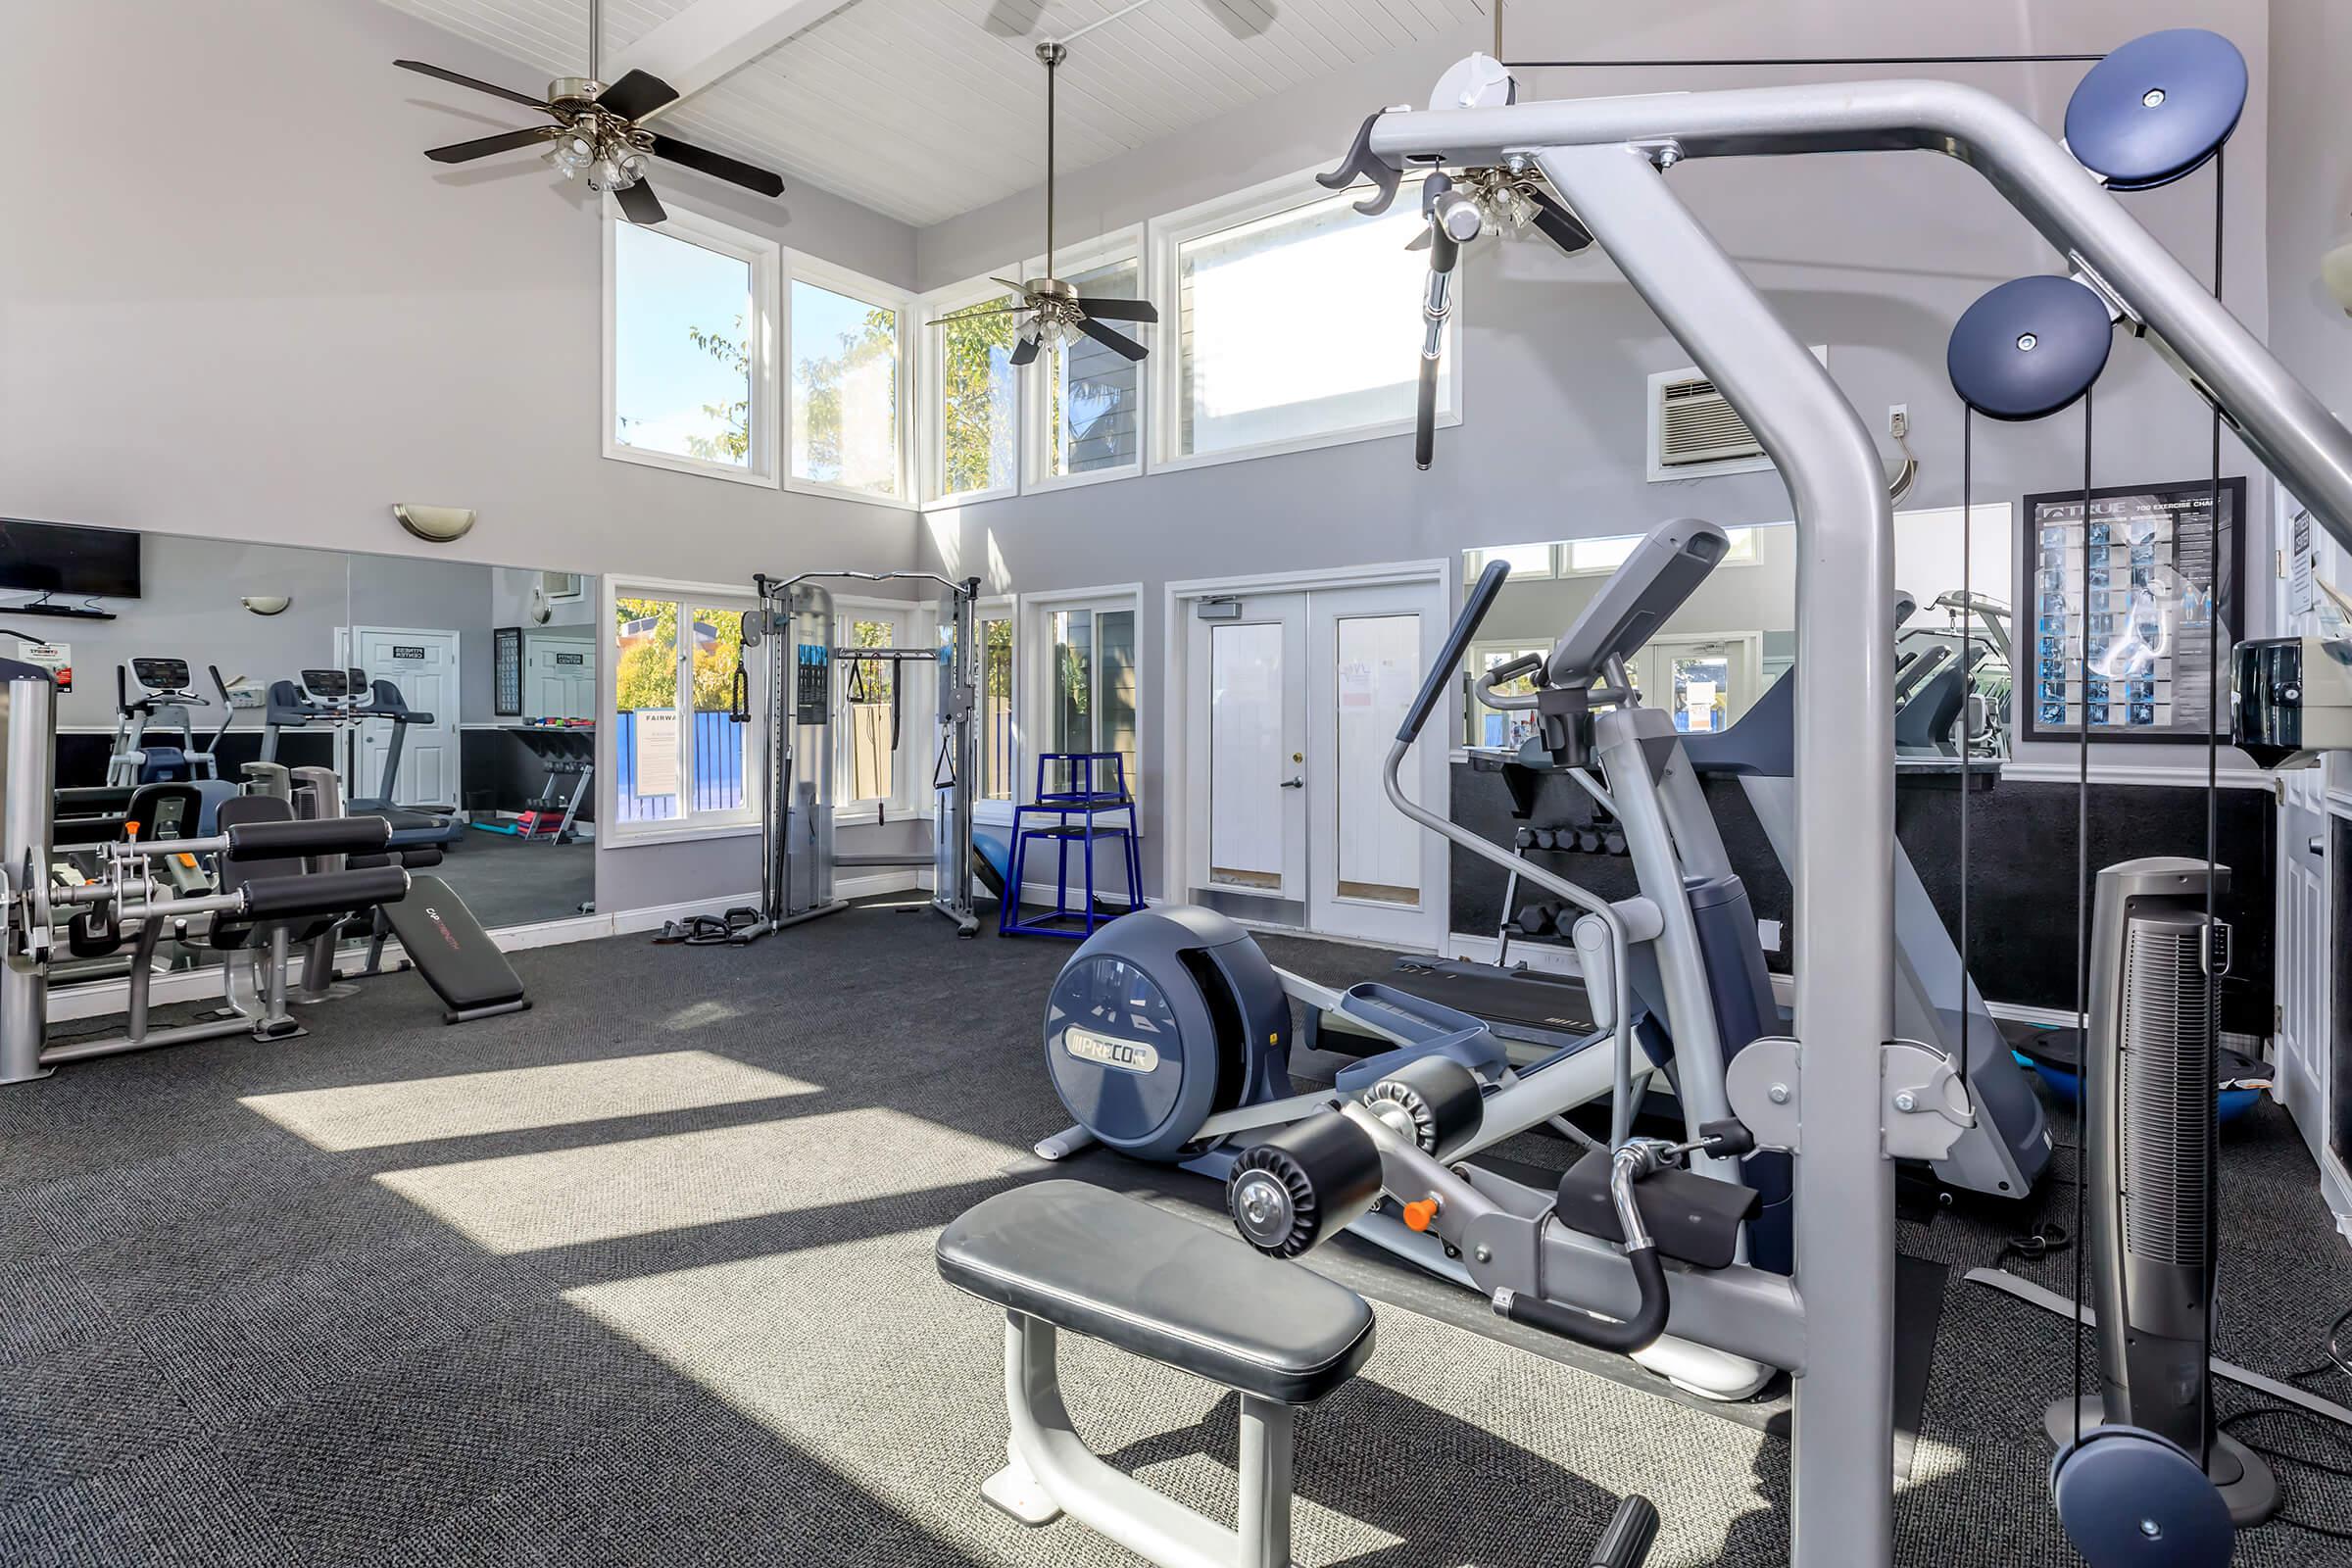 Fitness Center at Fairway Village in San Ramon CA